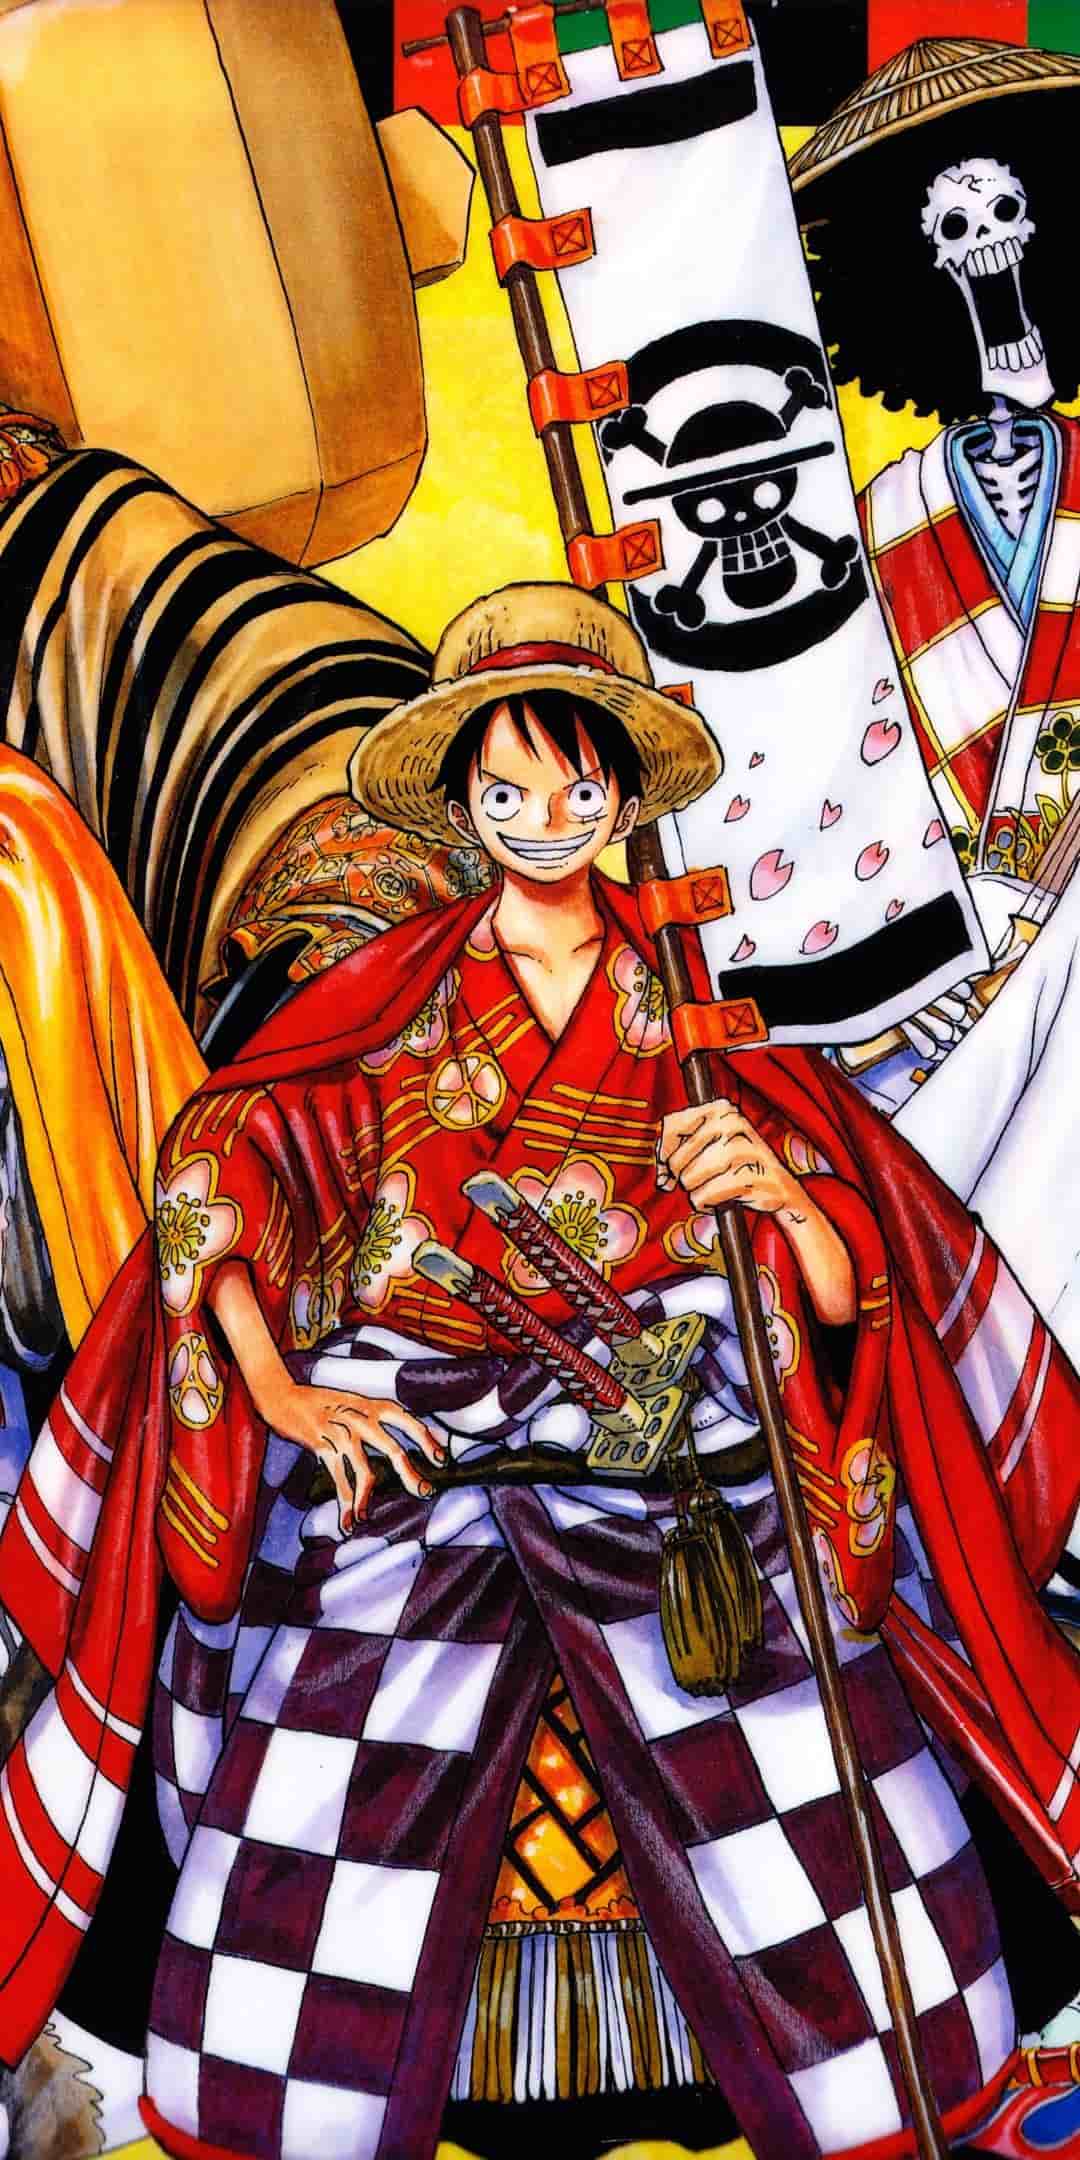 Hãy chiêm ngưỡng hình ảnh Luffy đẹp, tuyệt đẹp và đầy nghị lực của nhân vật chính trong bộ truyện tranh One Piece. Bạn sẽ bị cuốn hút bởi cái nhìn này.